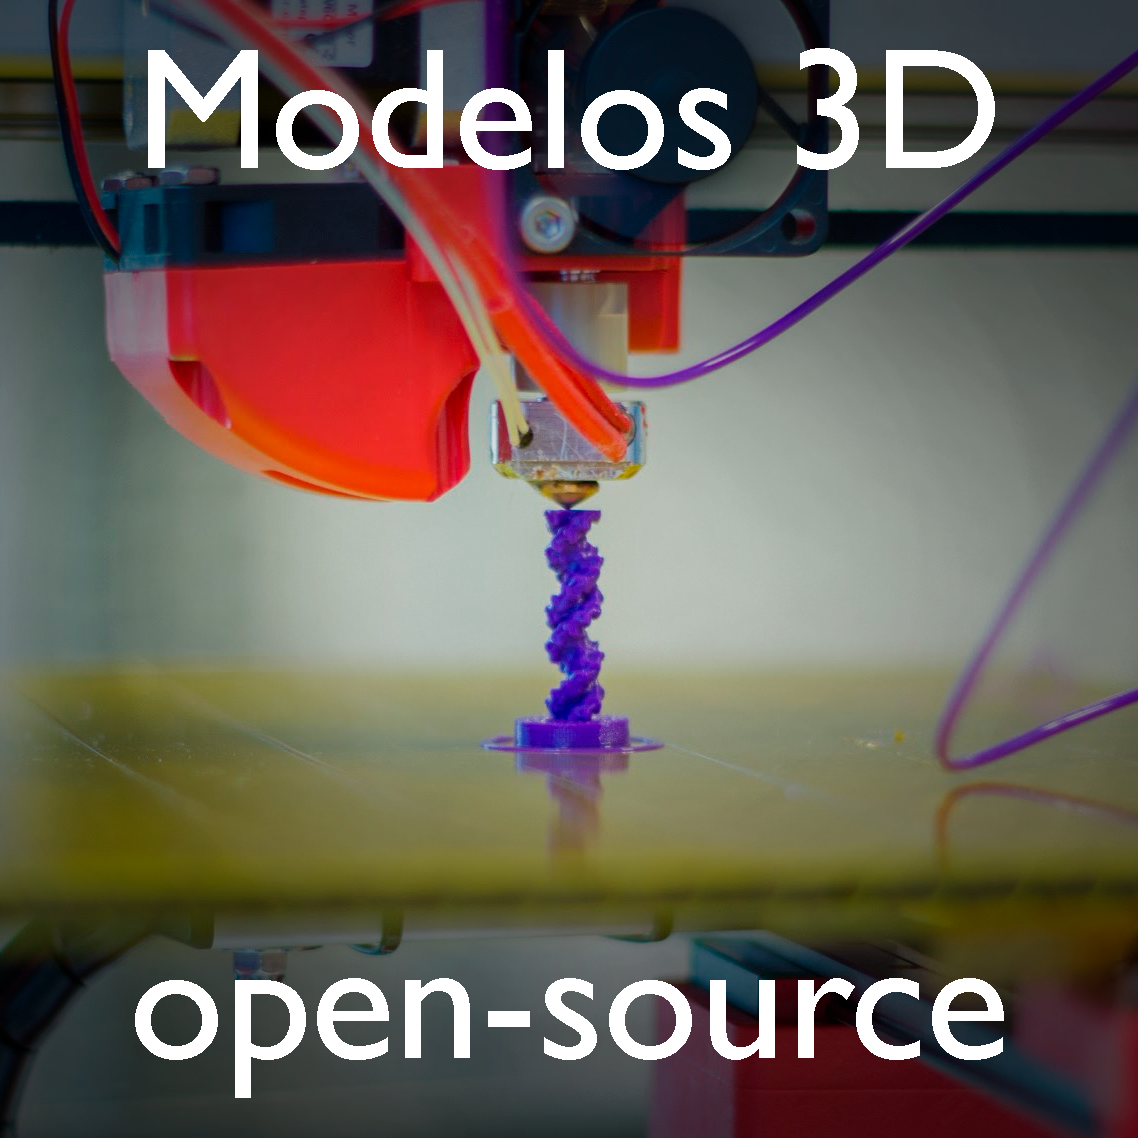 Páginas web open-source para impresión 3D